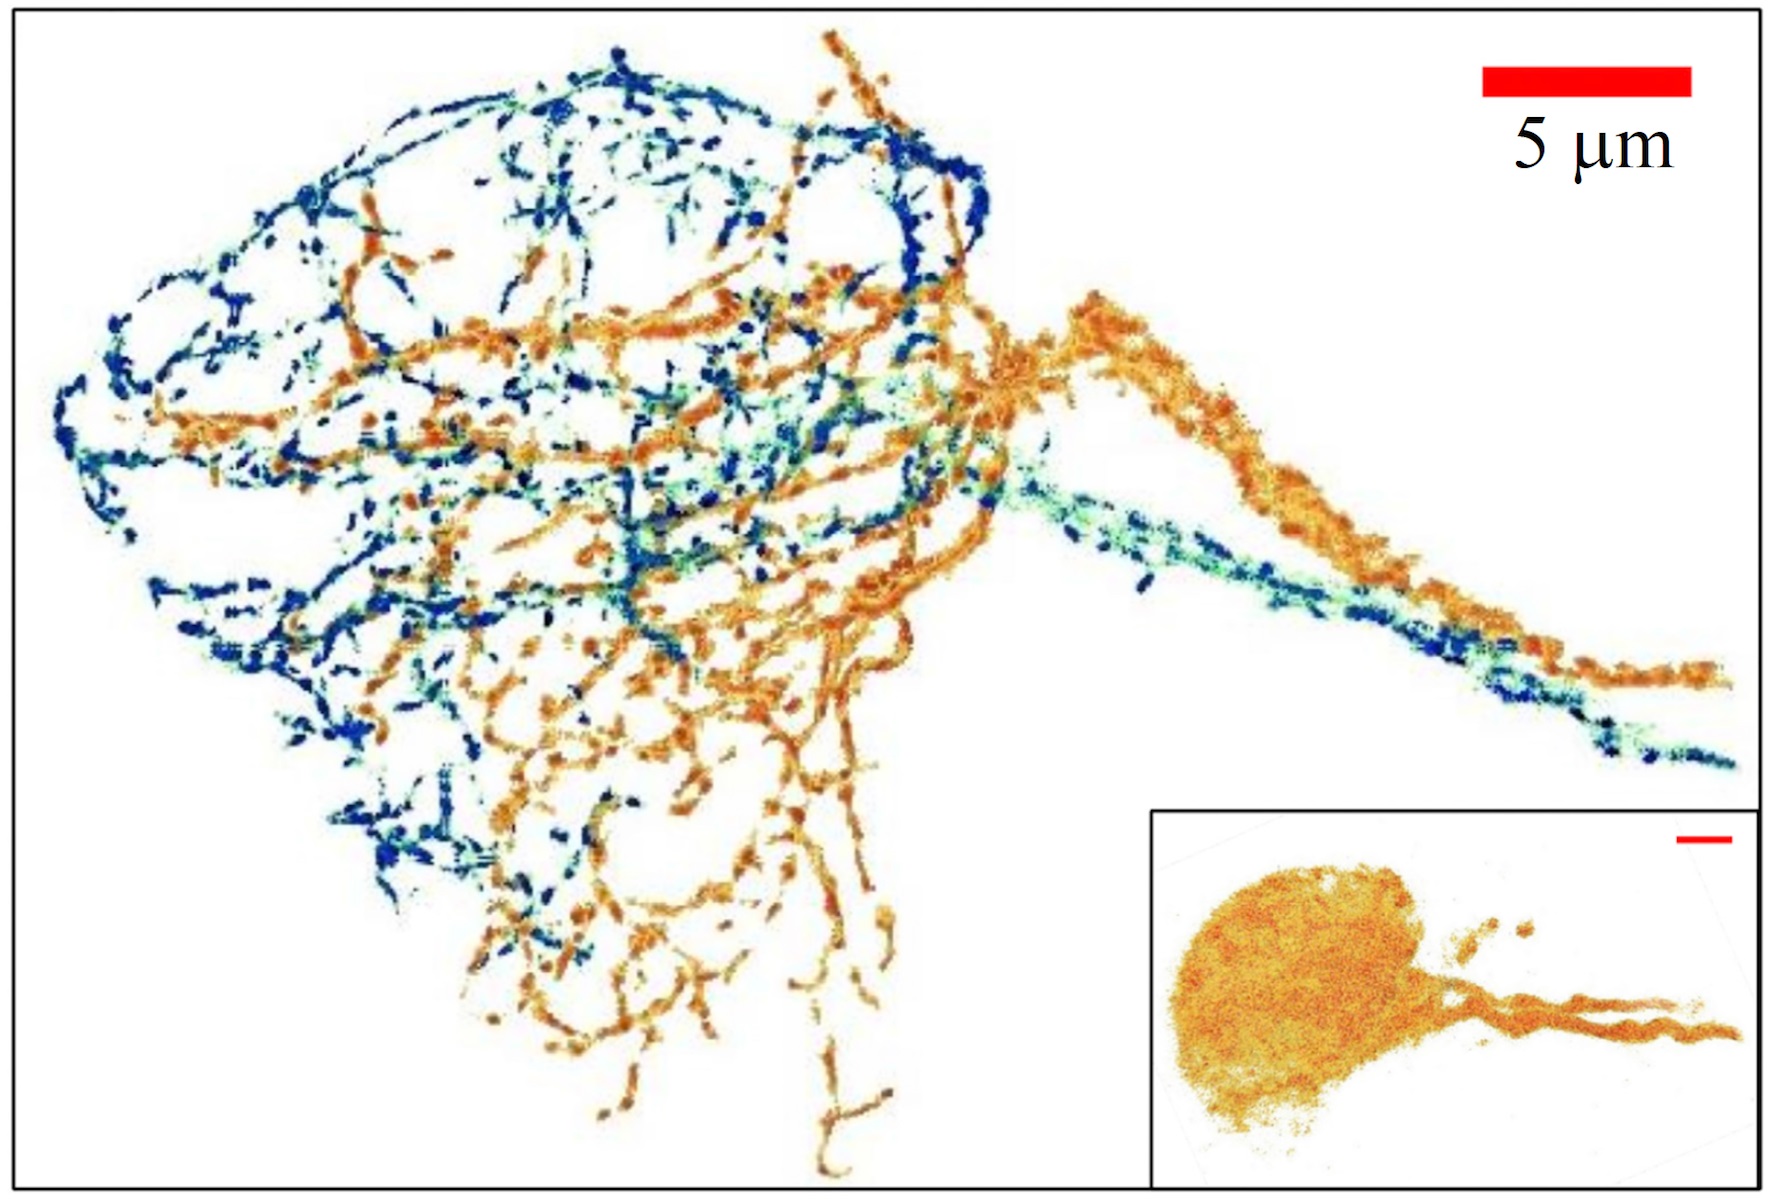 三維的神經纖維分布圖像。「深組織超解析光學技術」可將兩條緊密交纏的神經纖維清楚分離開來。右下圖為相同神經與染色，傳統共軛焦影像無法分辨神經纖維的細緻結構。（圖／朱士維提供）